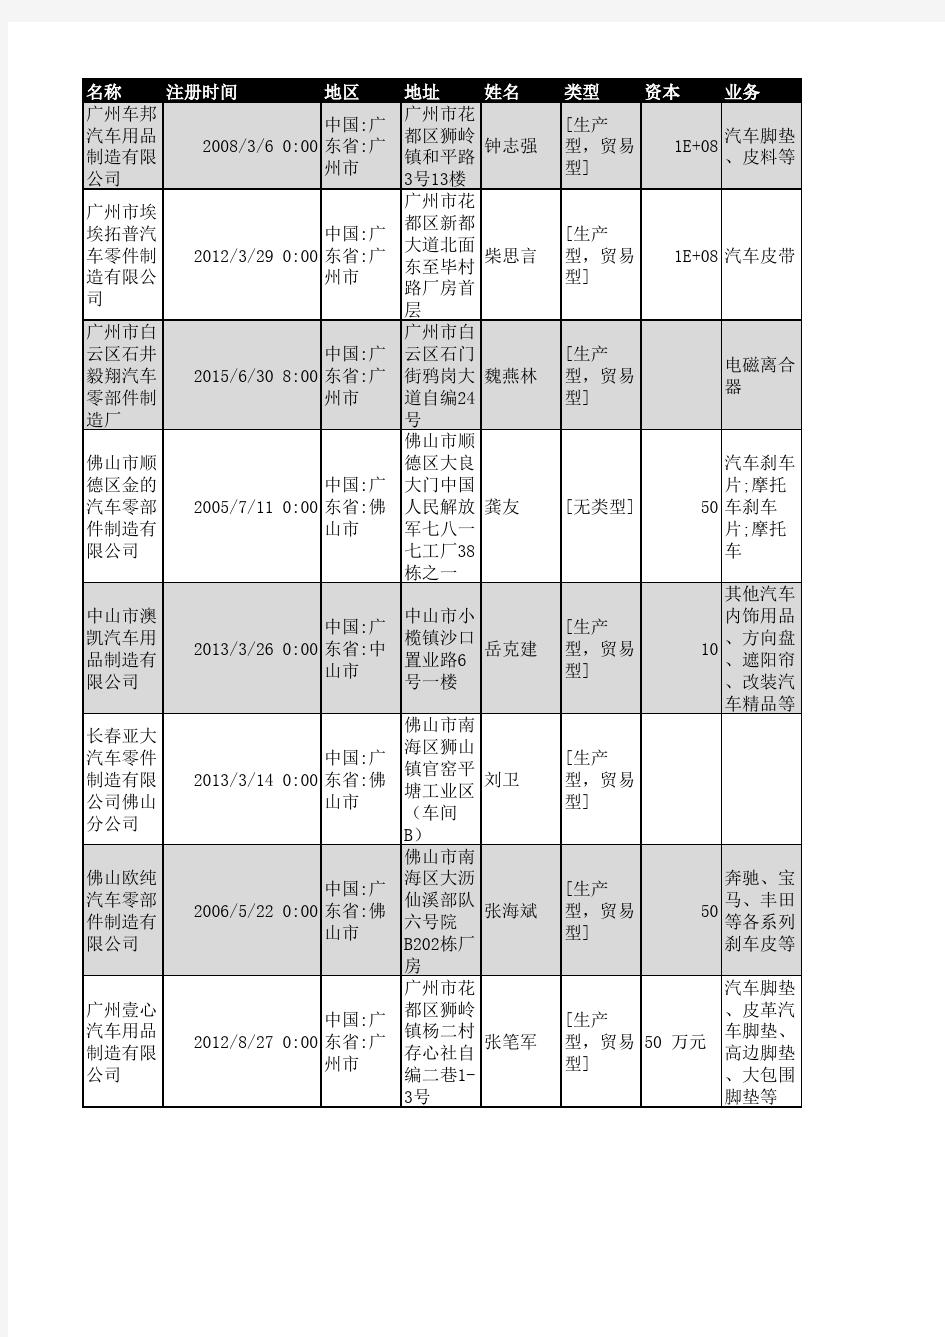 2018年广东省汽车零部件制造企业名录1702家